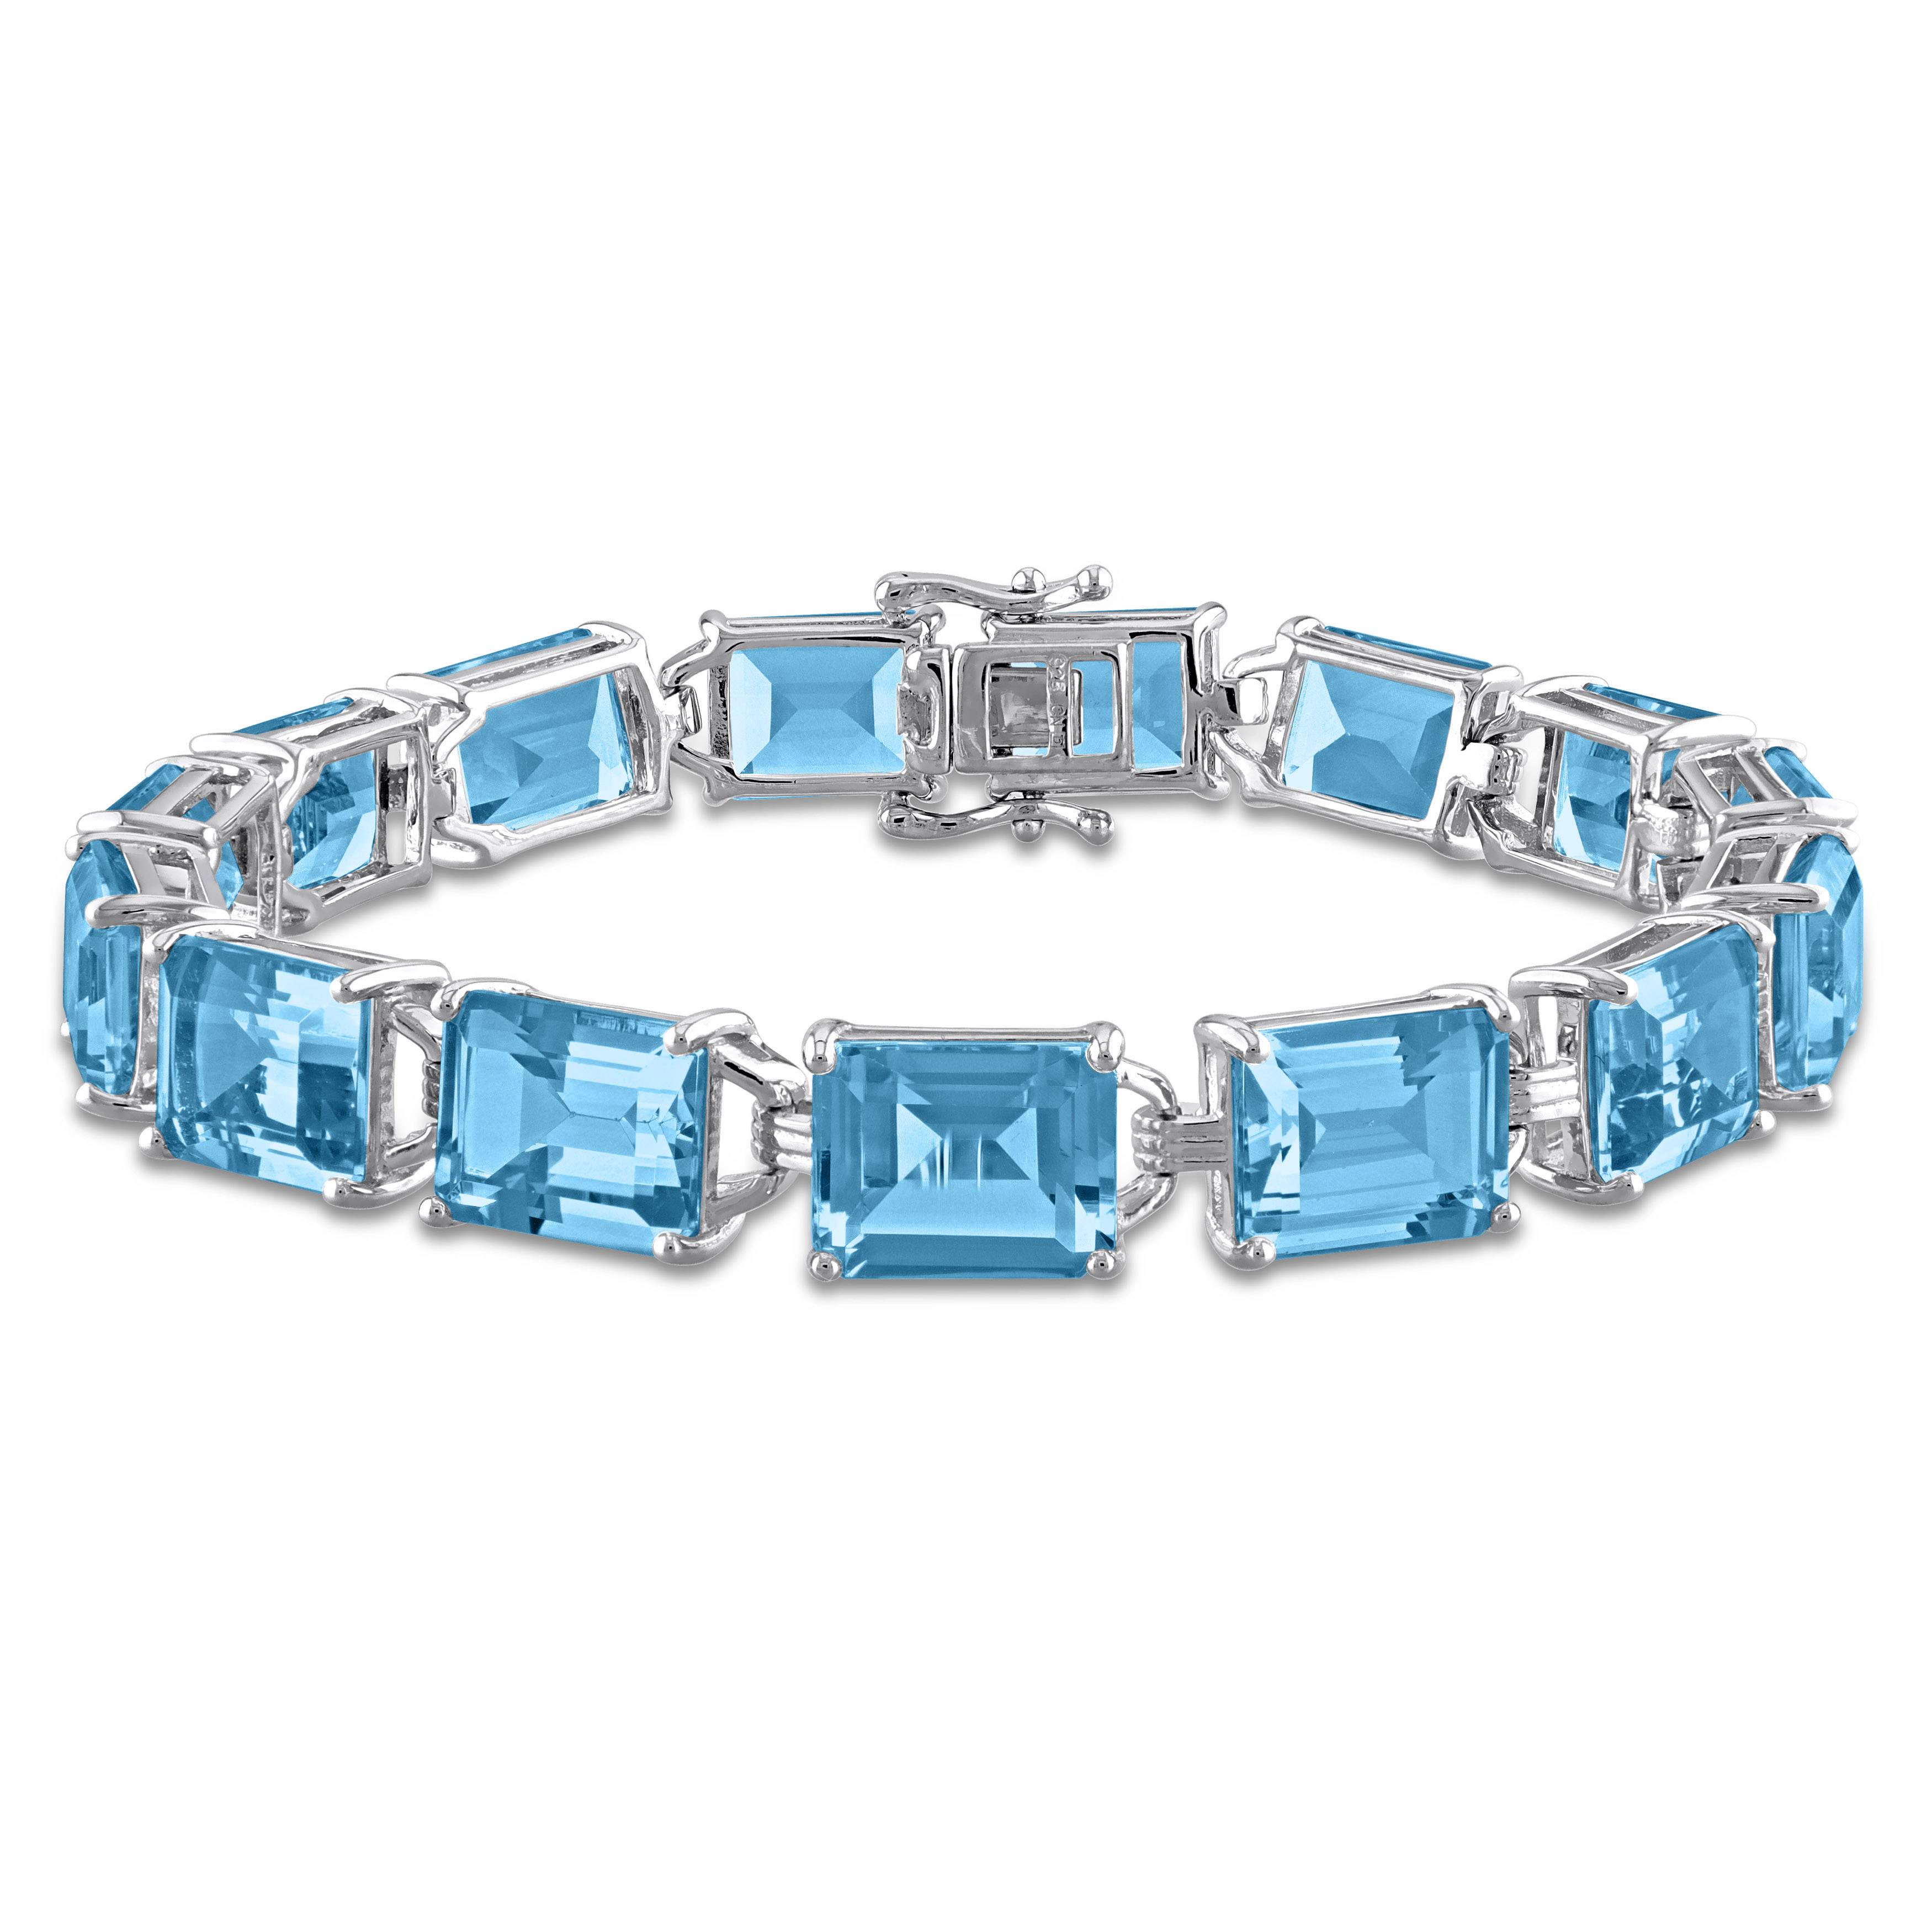 Vahan Bracelet with London Blue Topaz and Diamonds - Vahan Style #  22871DLBT08